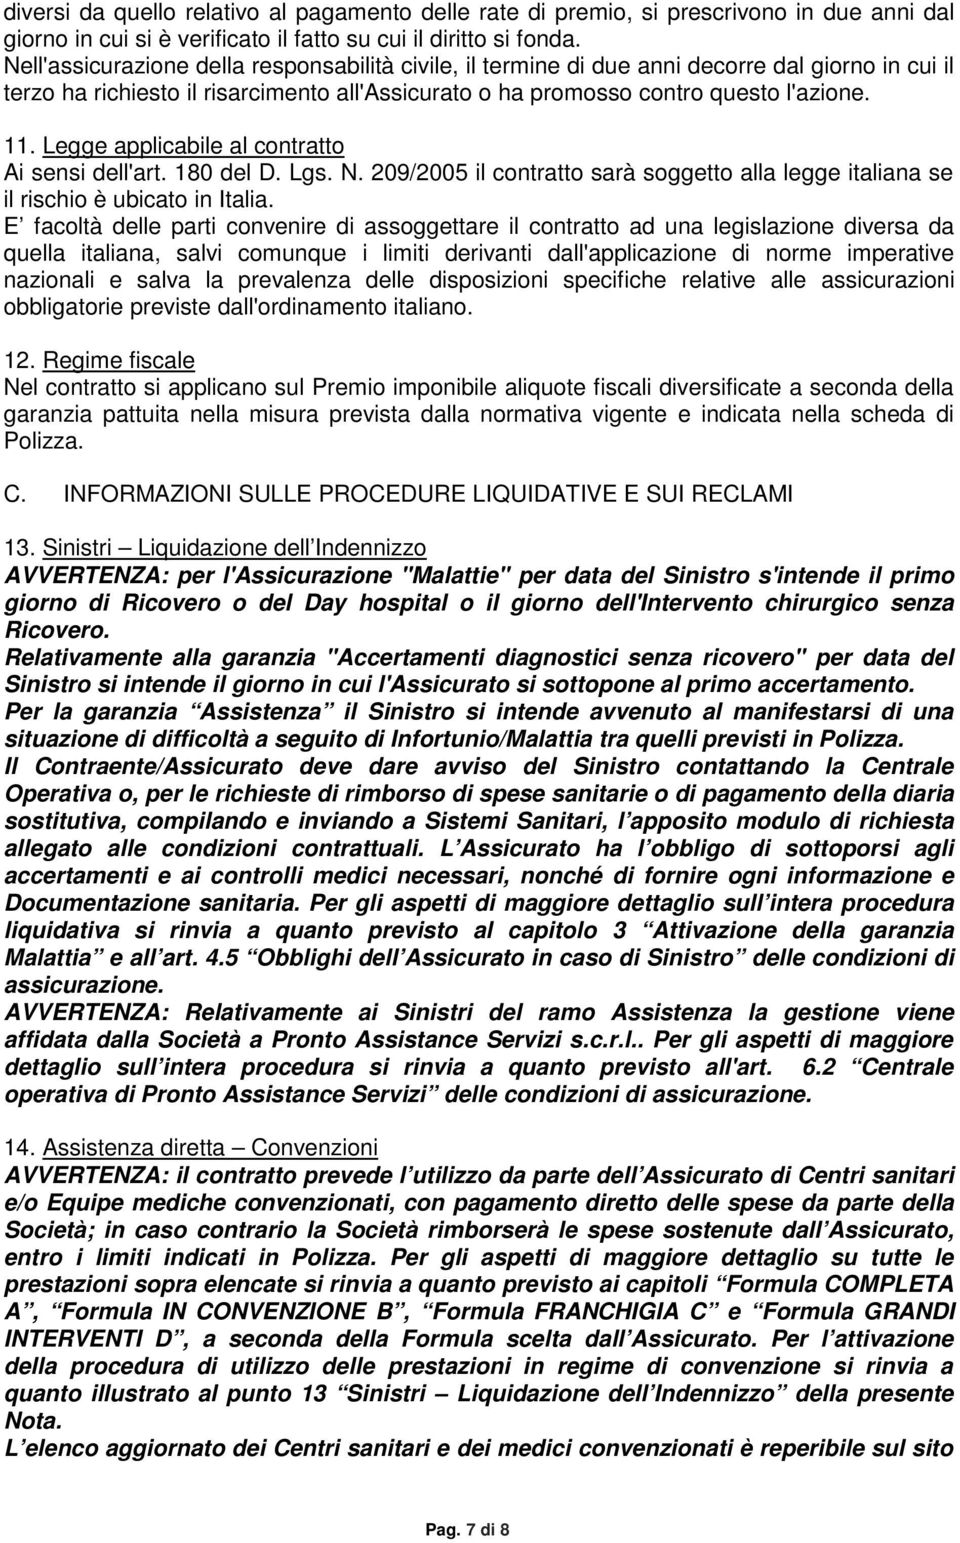 Legge applicabile al contratto Ai sensi dell'art. 180 del D. Lgs. N. 209/2005 il contratto sarà soggetto alla legge italiana se il rischio è ubicato in Italia.